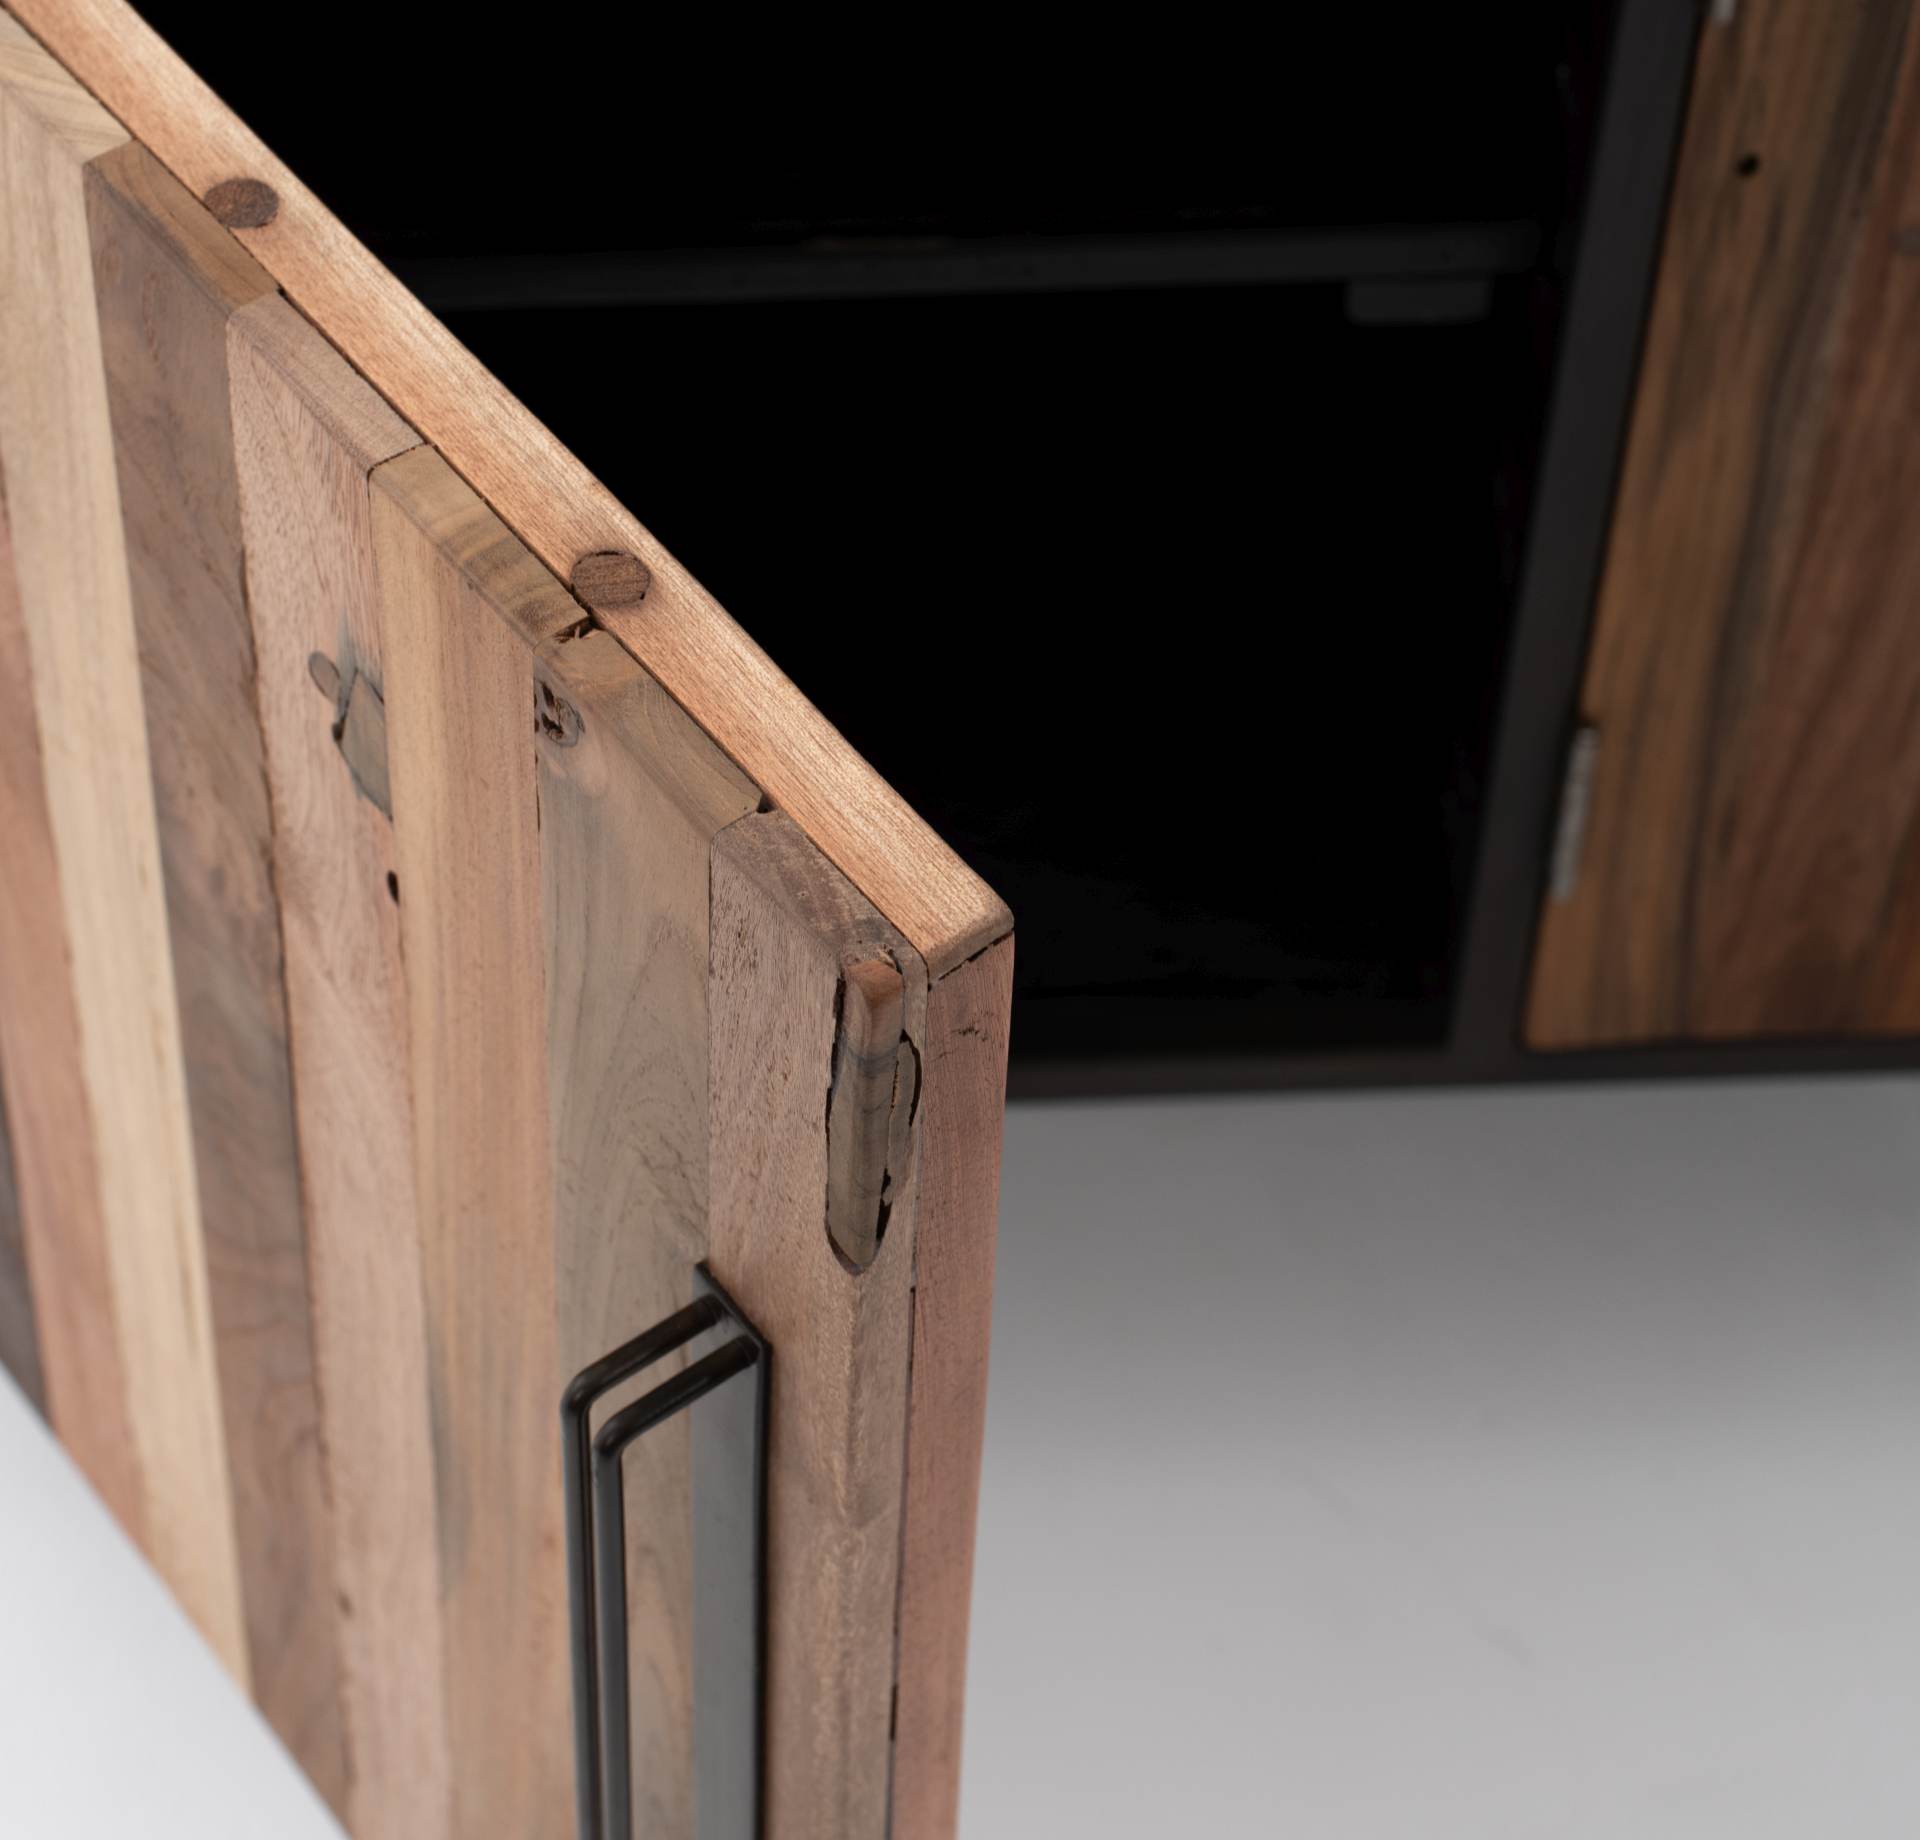 Das TV-Board Nordic überzeugt mit seinem Industriellen Design. Gefertigt wurde es aus Recyceltem Boots Holz, welches einen natürlichen Farbton besitzt. Das Gestell ist aus Metall und hat eine Anthrazit Farbe. Das TV-Board verfügt über drei Türen. Die Brei